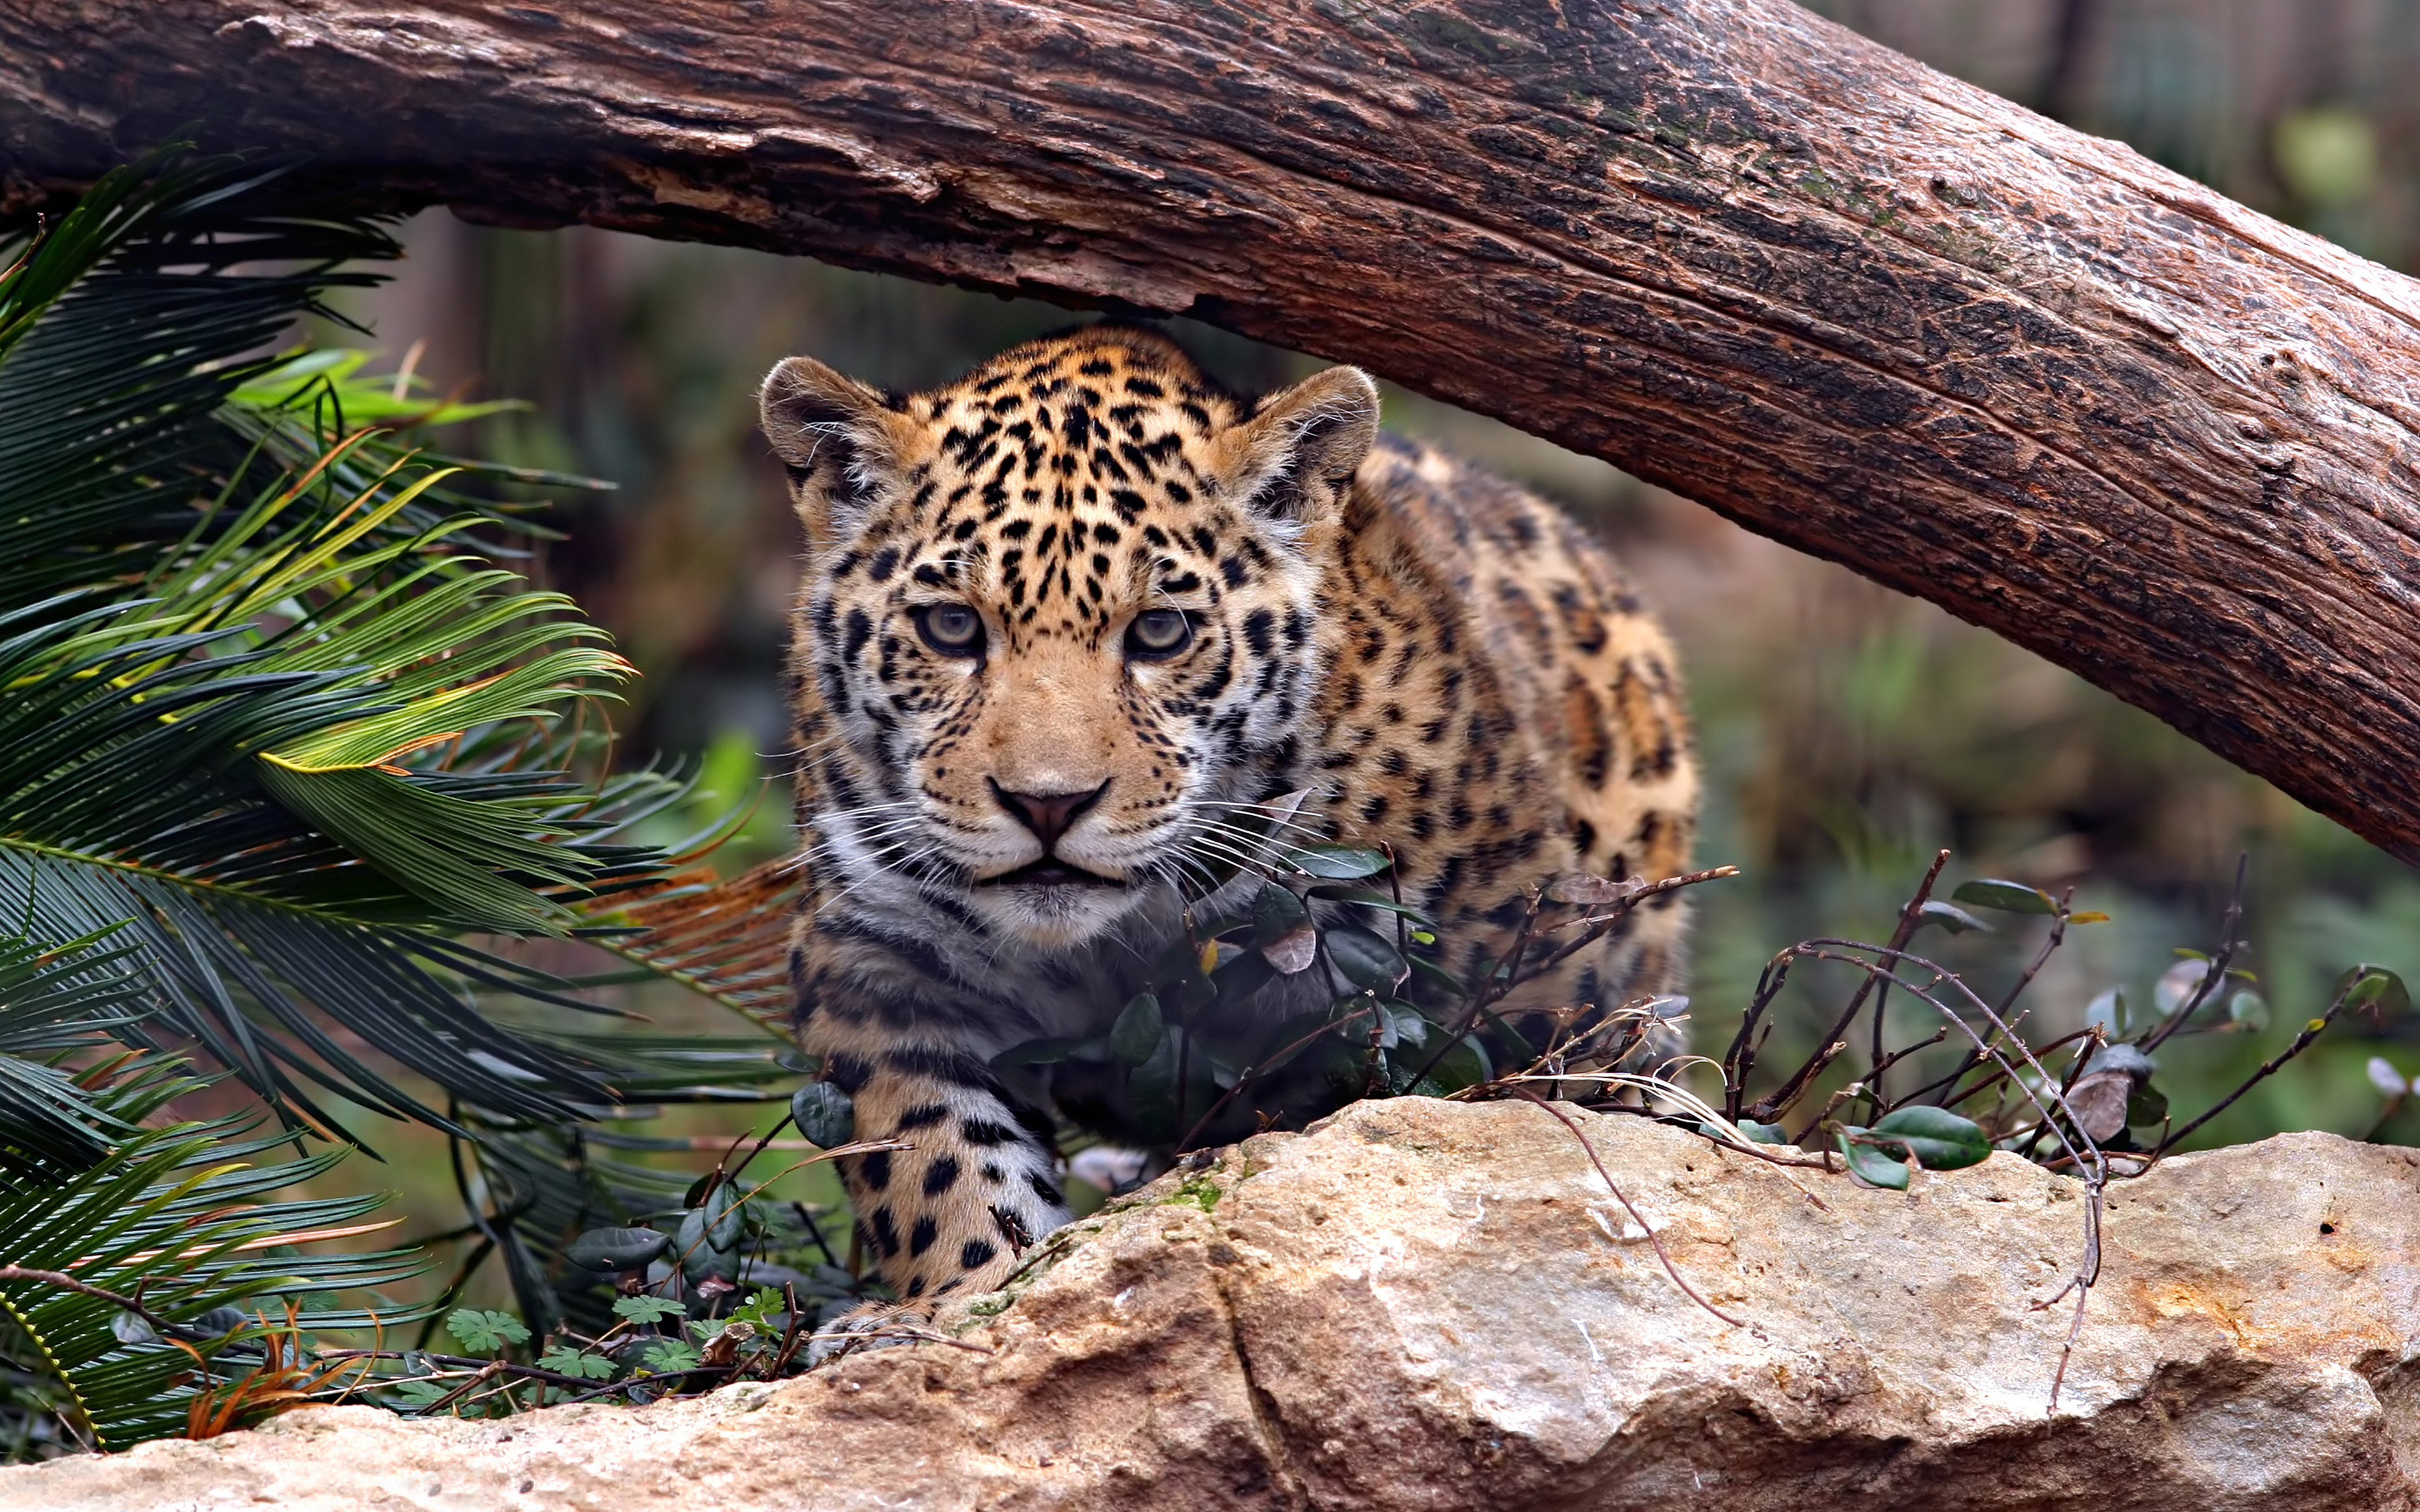 Animals Jaguar Predator Wild Cat Uhd 4k Wallpapers For Desktop Mobile  Phones 5200x3250 : 